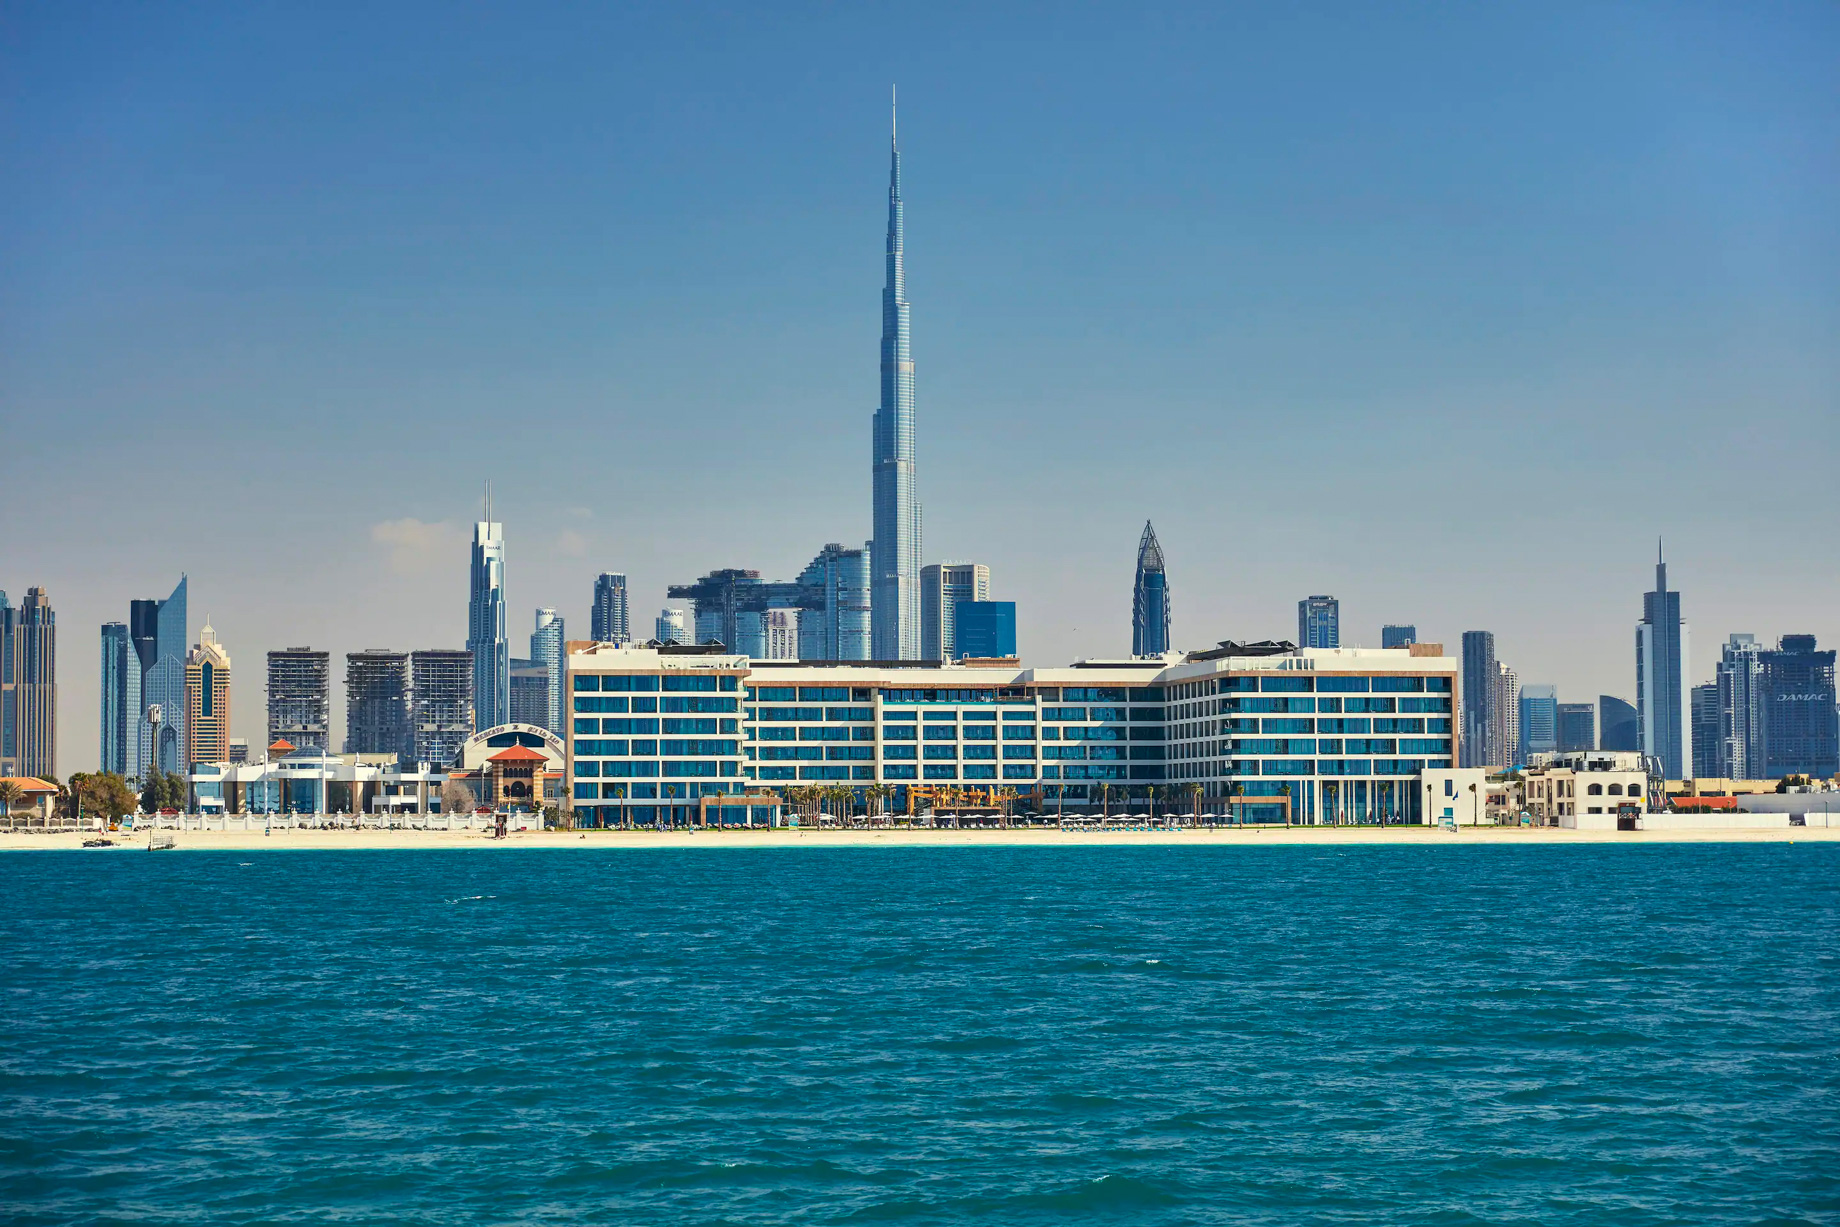 Mandarin Oriental Jumeira, Dubai Resort - Jumeirah, Dubai, UAE - Exterior Beach View Cityscape